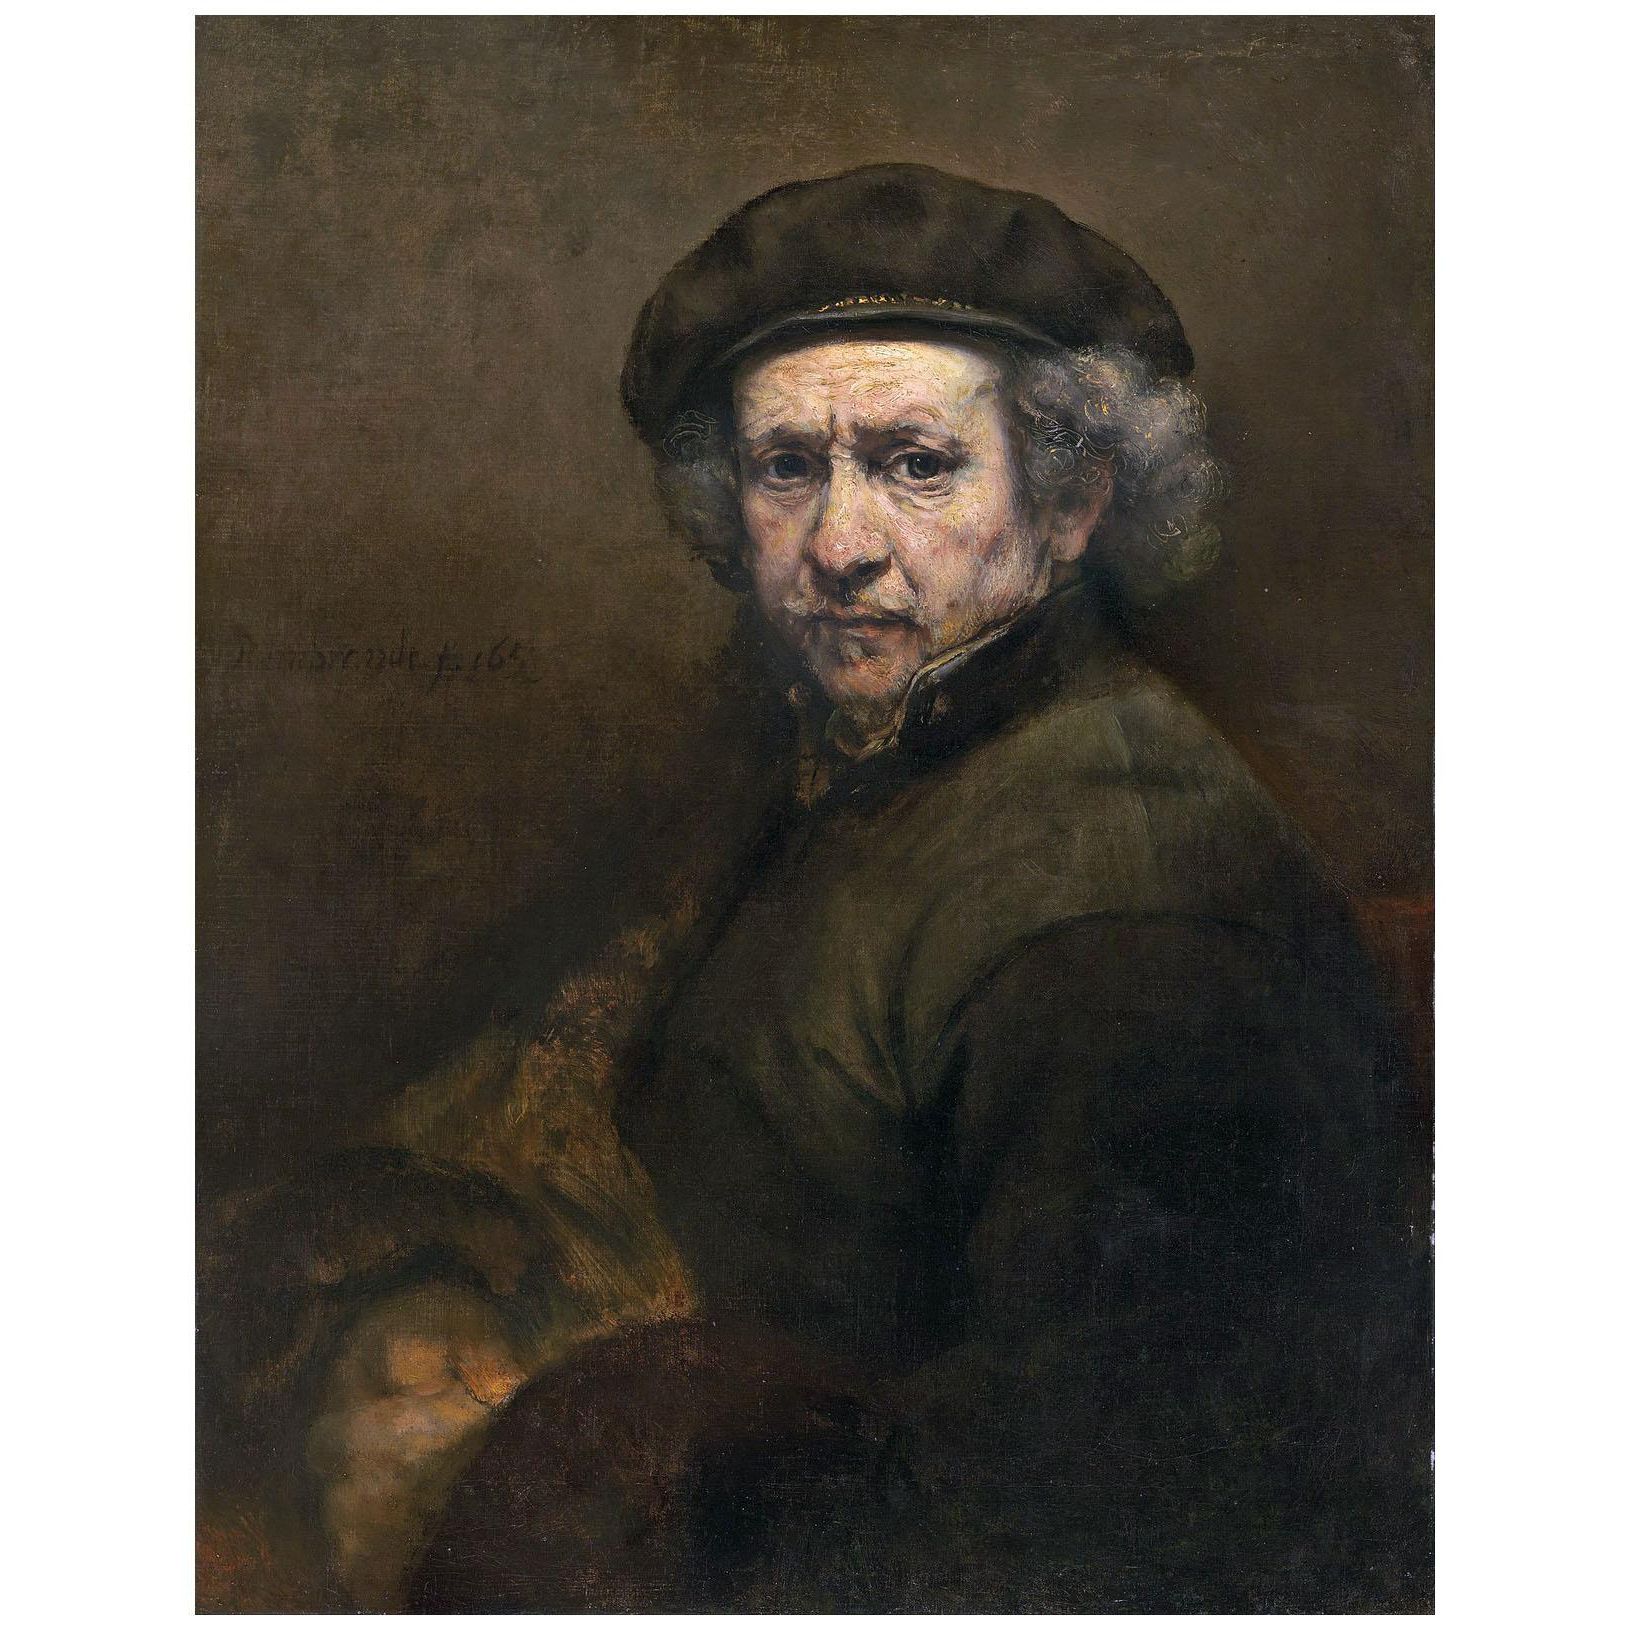 Rembrandt. Self-Portrait. 1659. NGA Washington